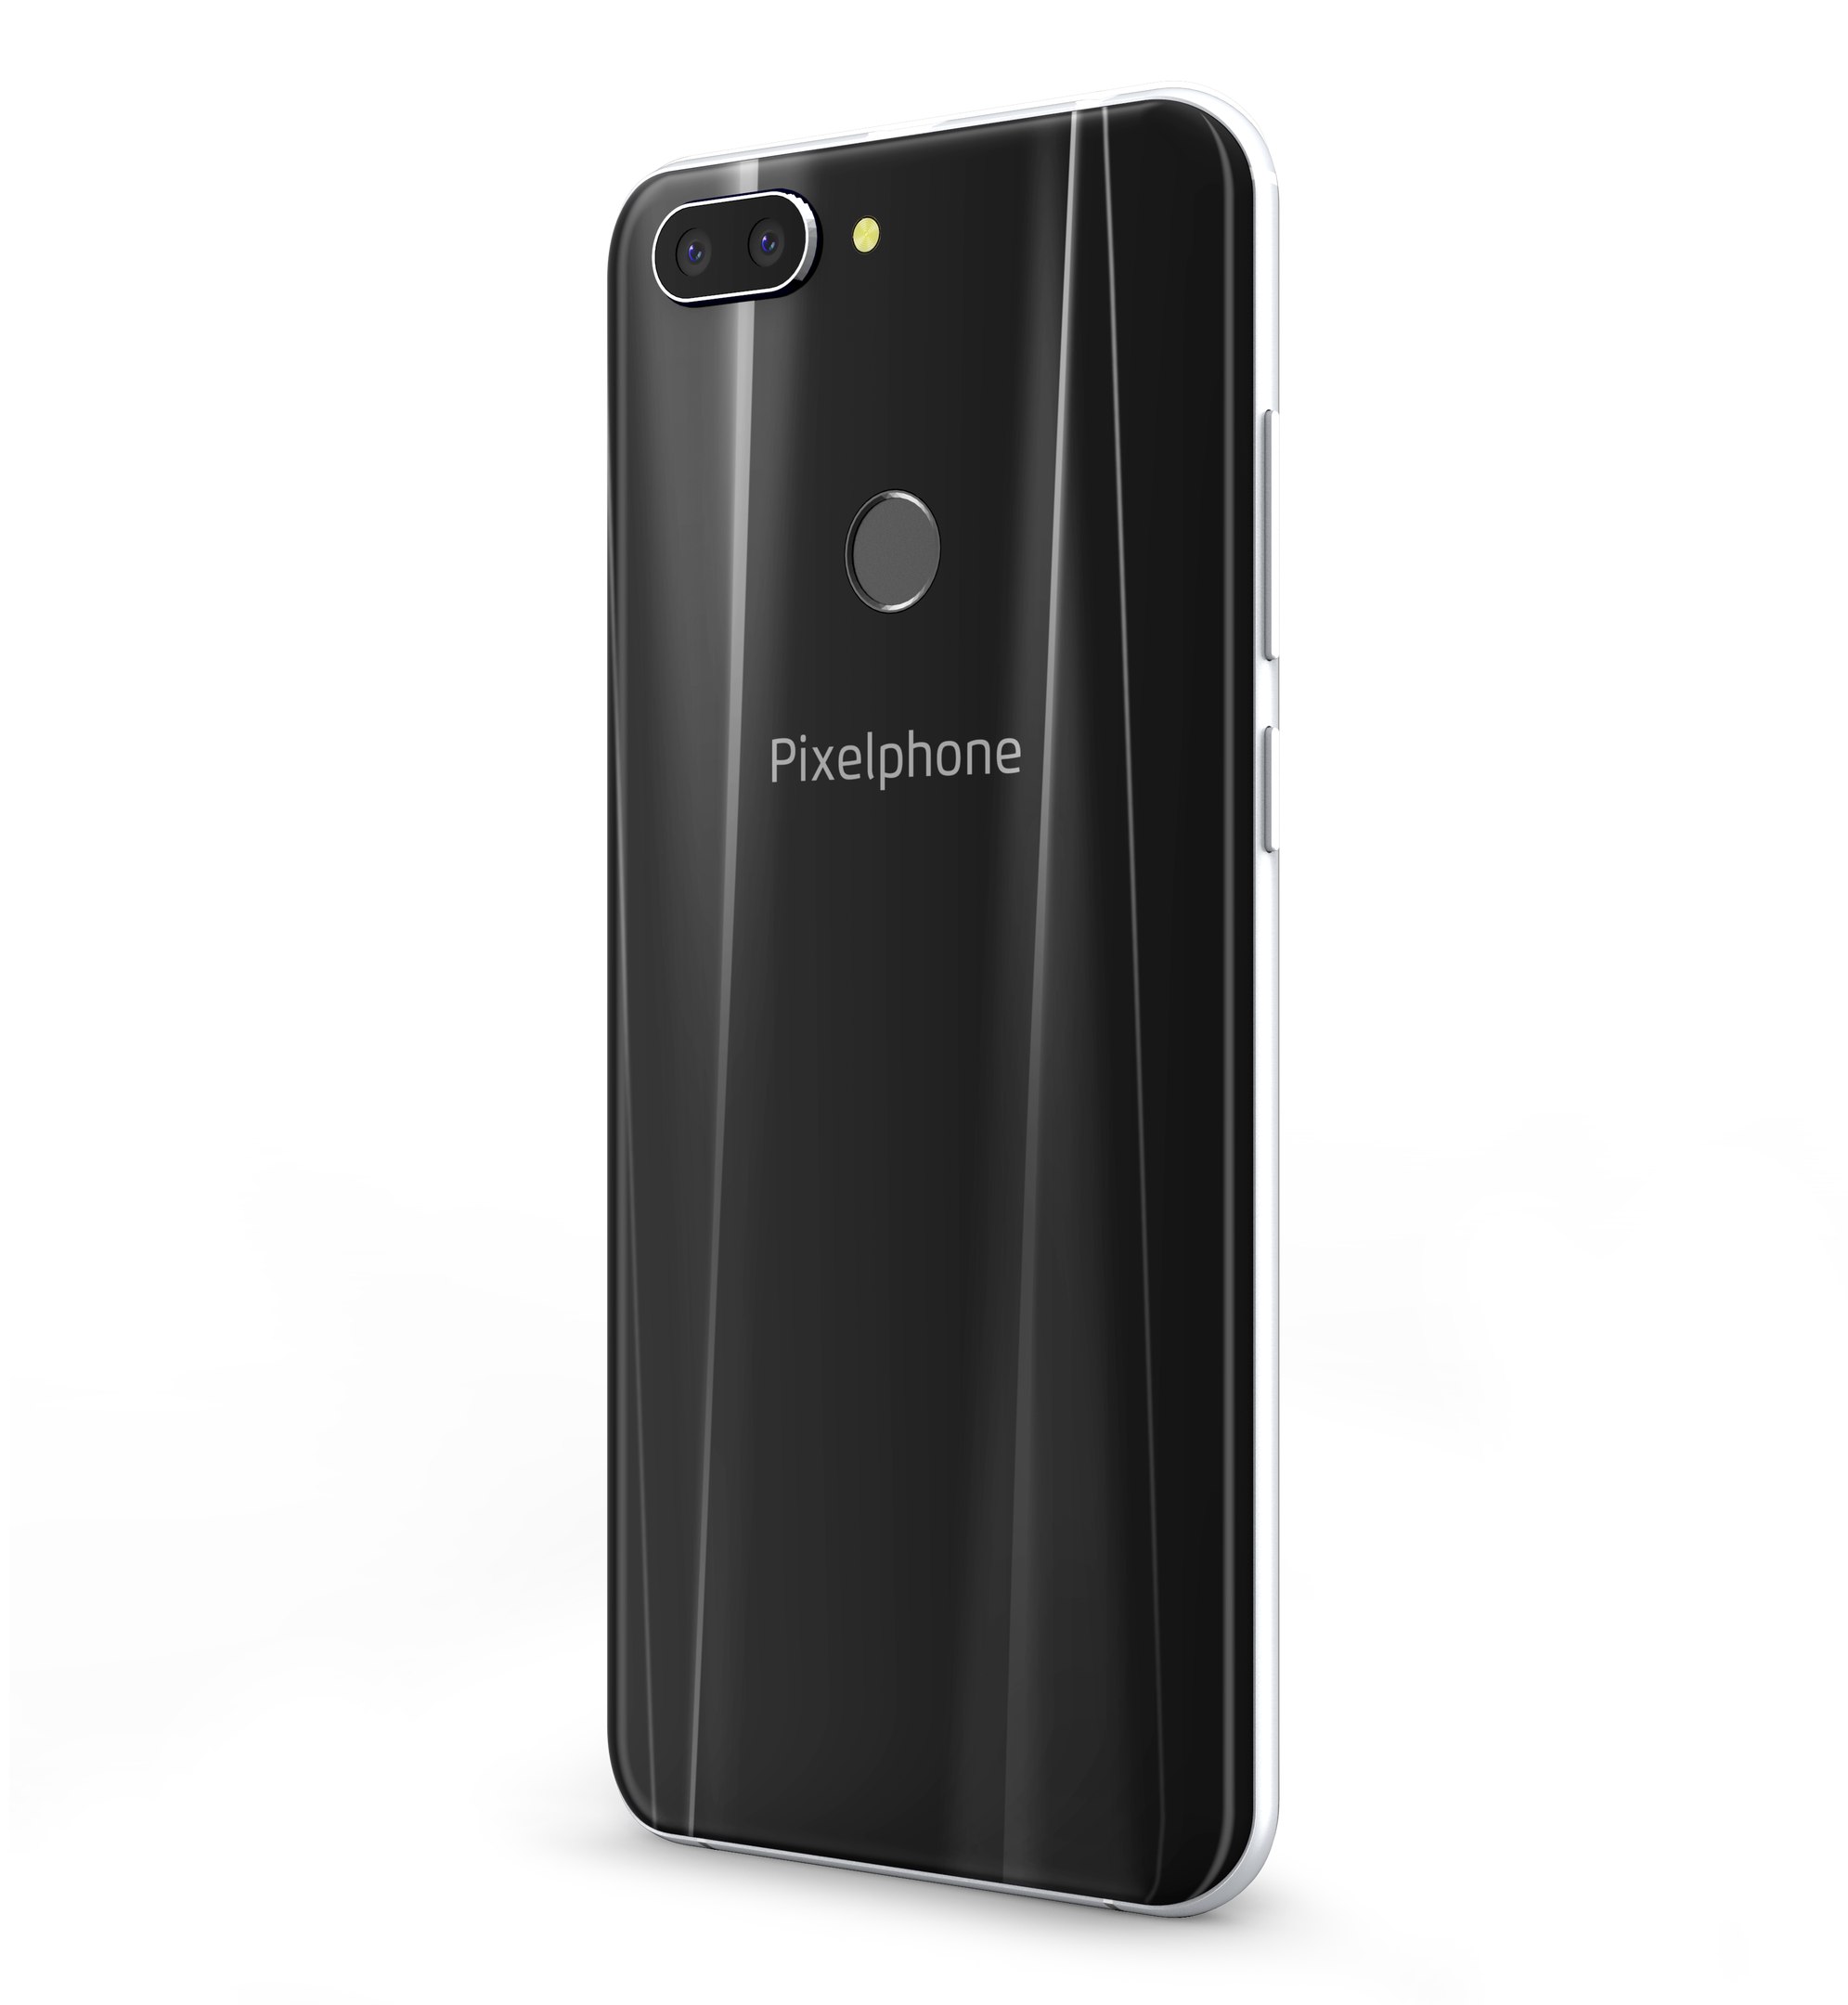 Первый бюджетный смартфон компании Pixelphone представлен официально